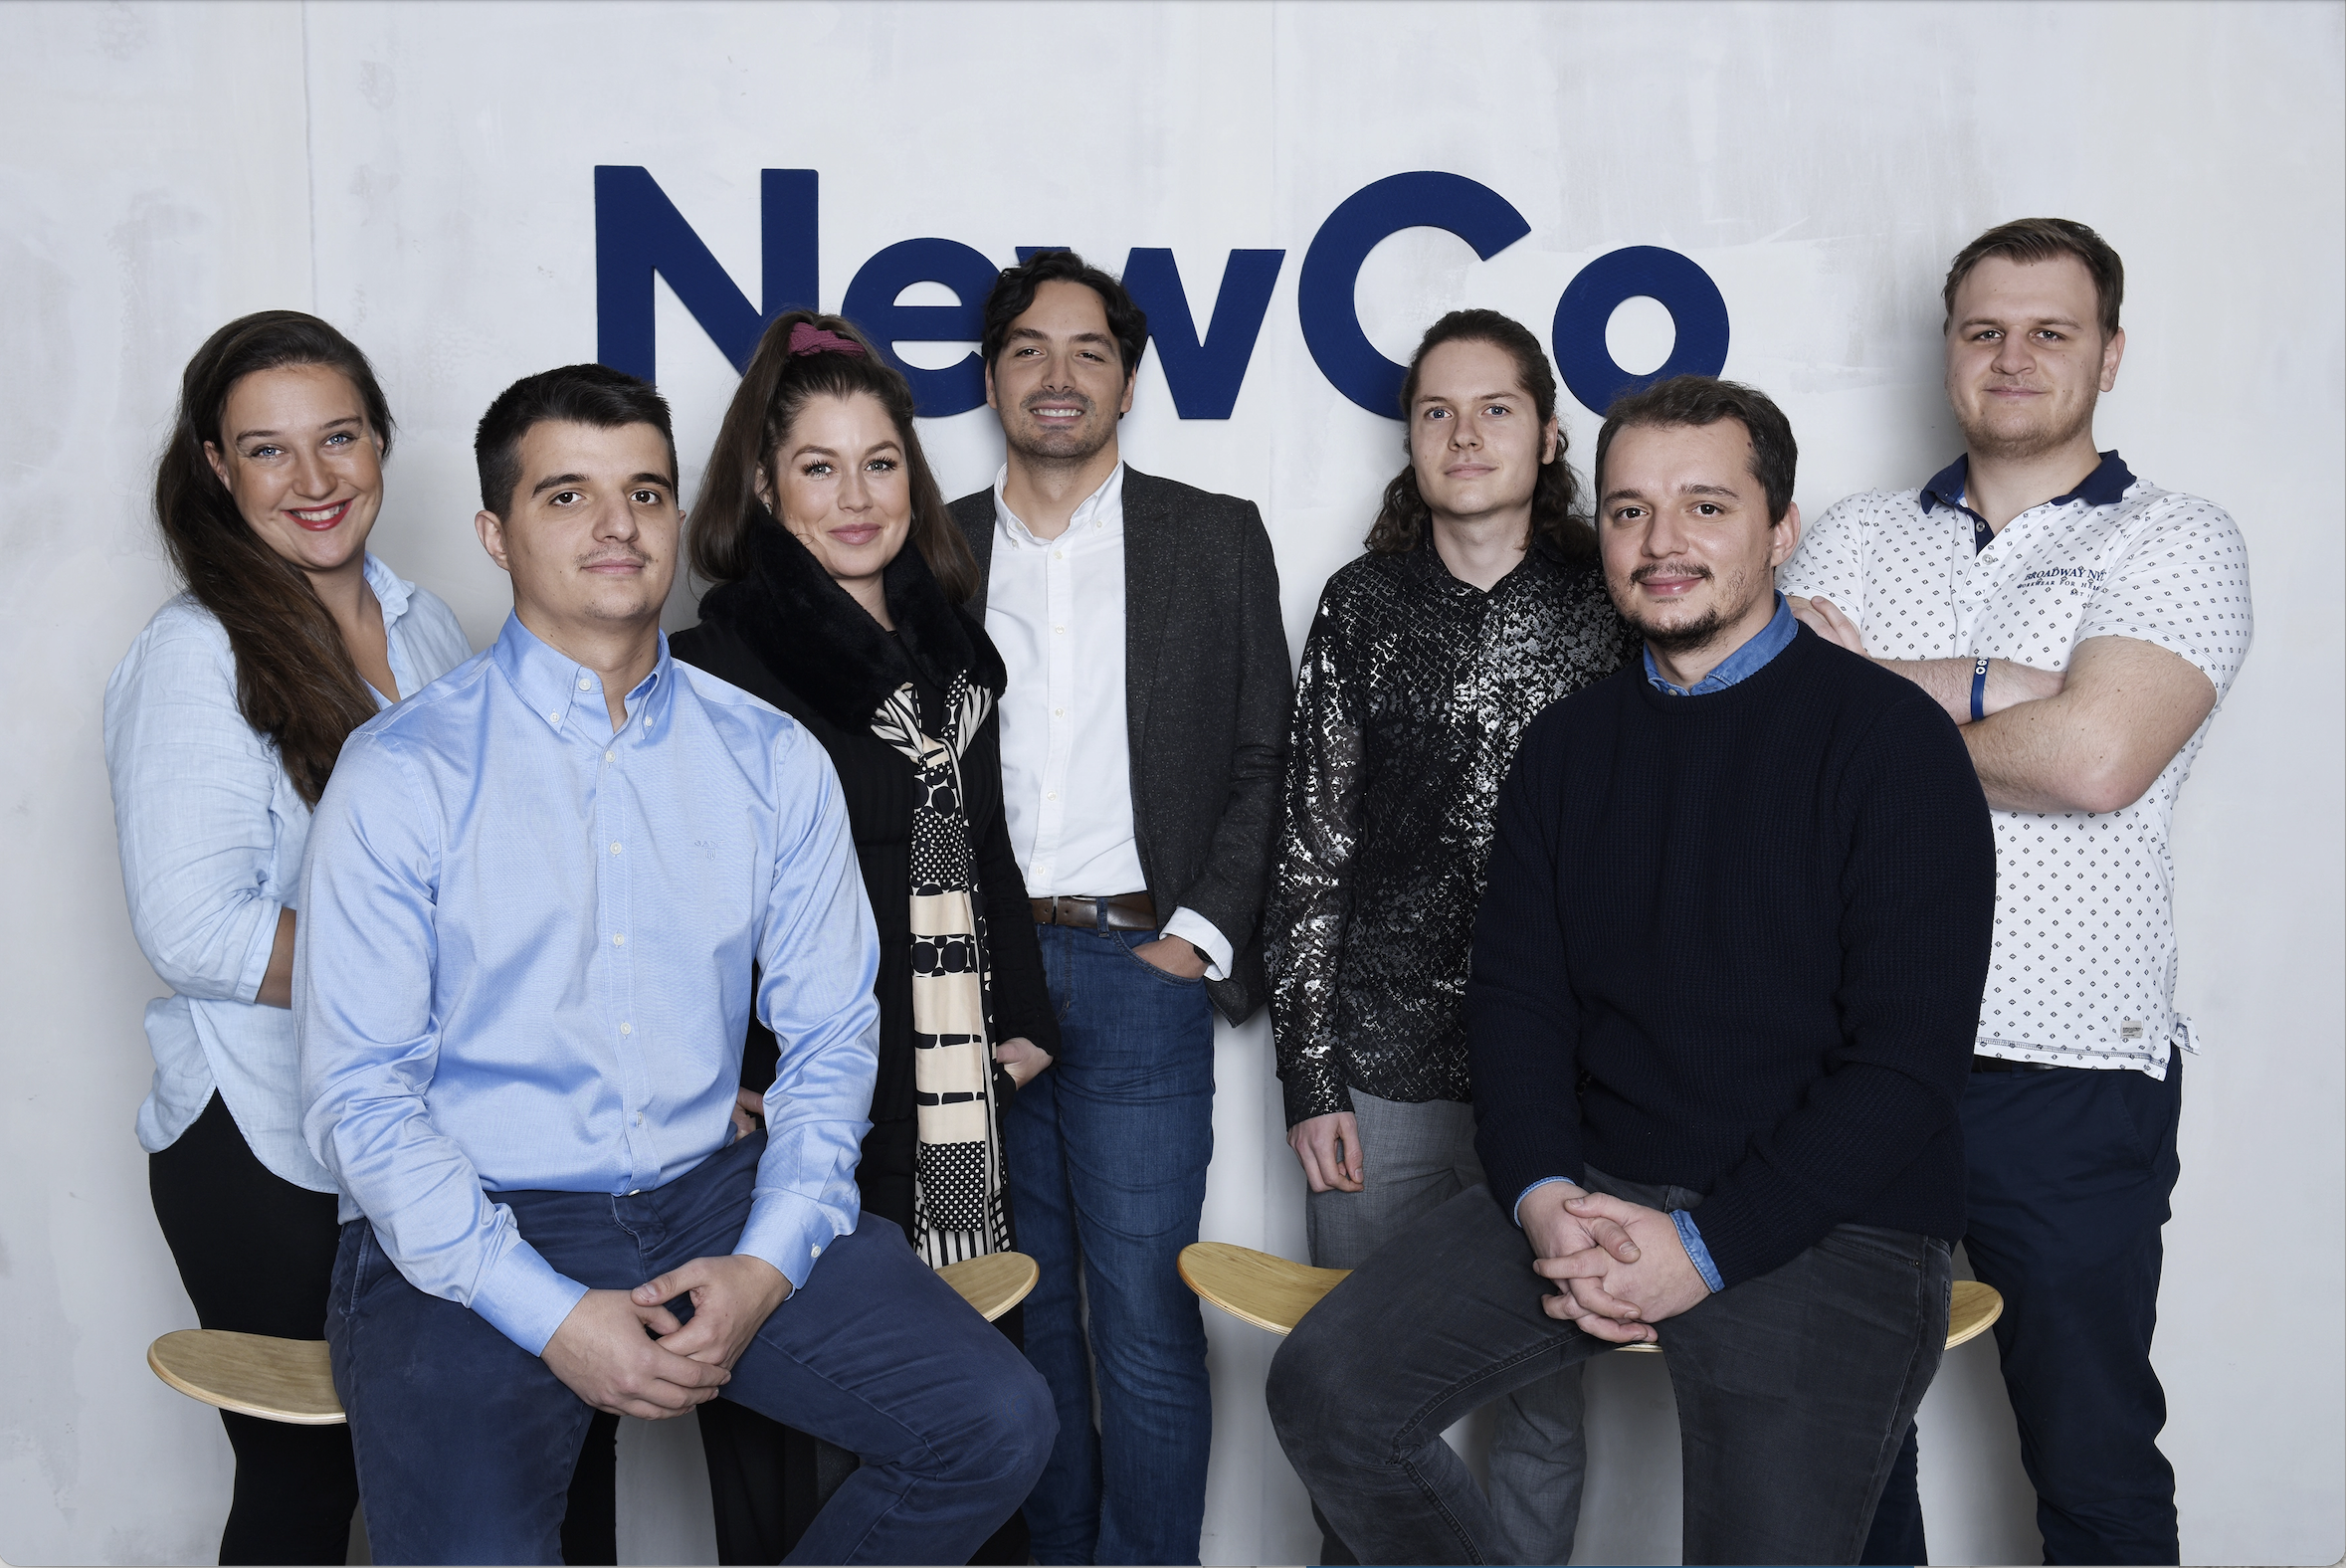 La Vaudoise soutient NewCo dans son expansion outre-Sarine